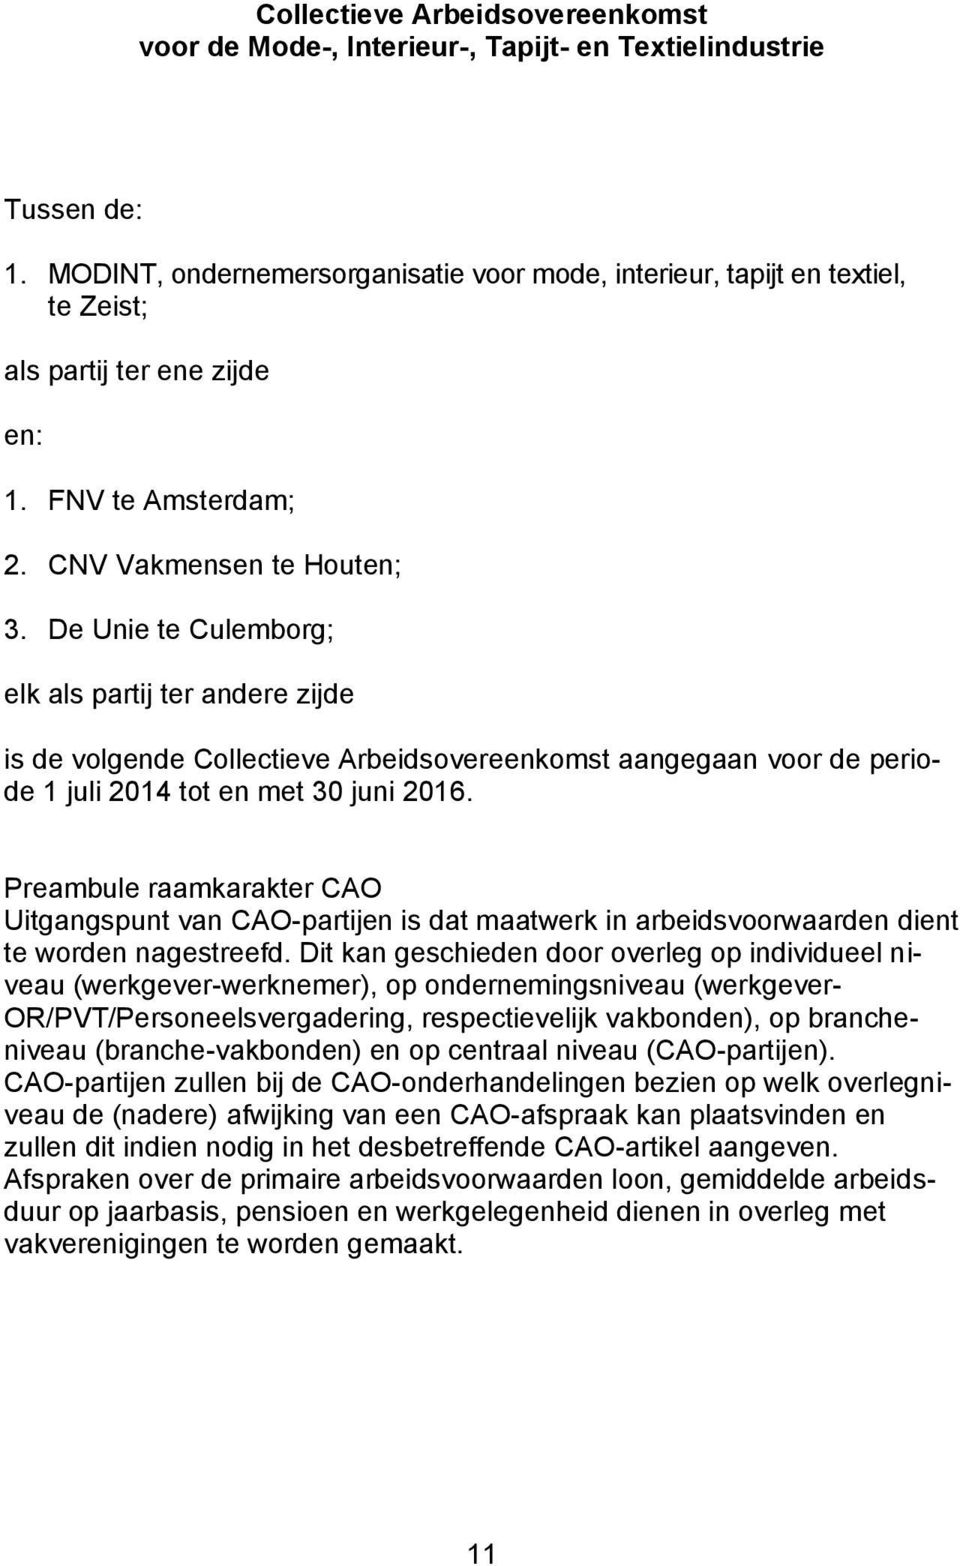 De Unie te Culemborg; elk als partij ter andere zijde is de volgende Collectieve Arbeidsovereenkomst aangegaan voor de periode 1 juli 2014 tot en met 30 juni 2016.